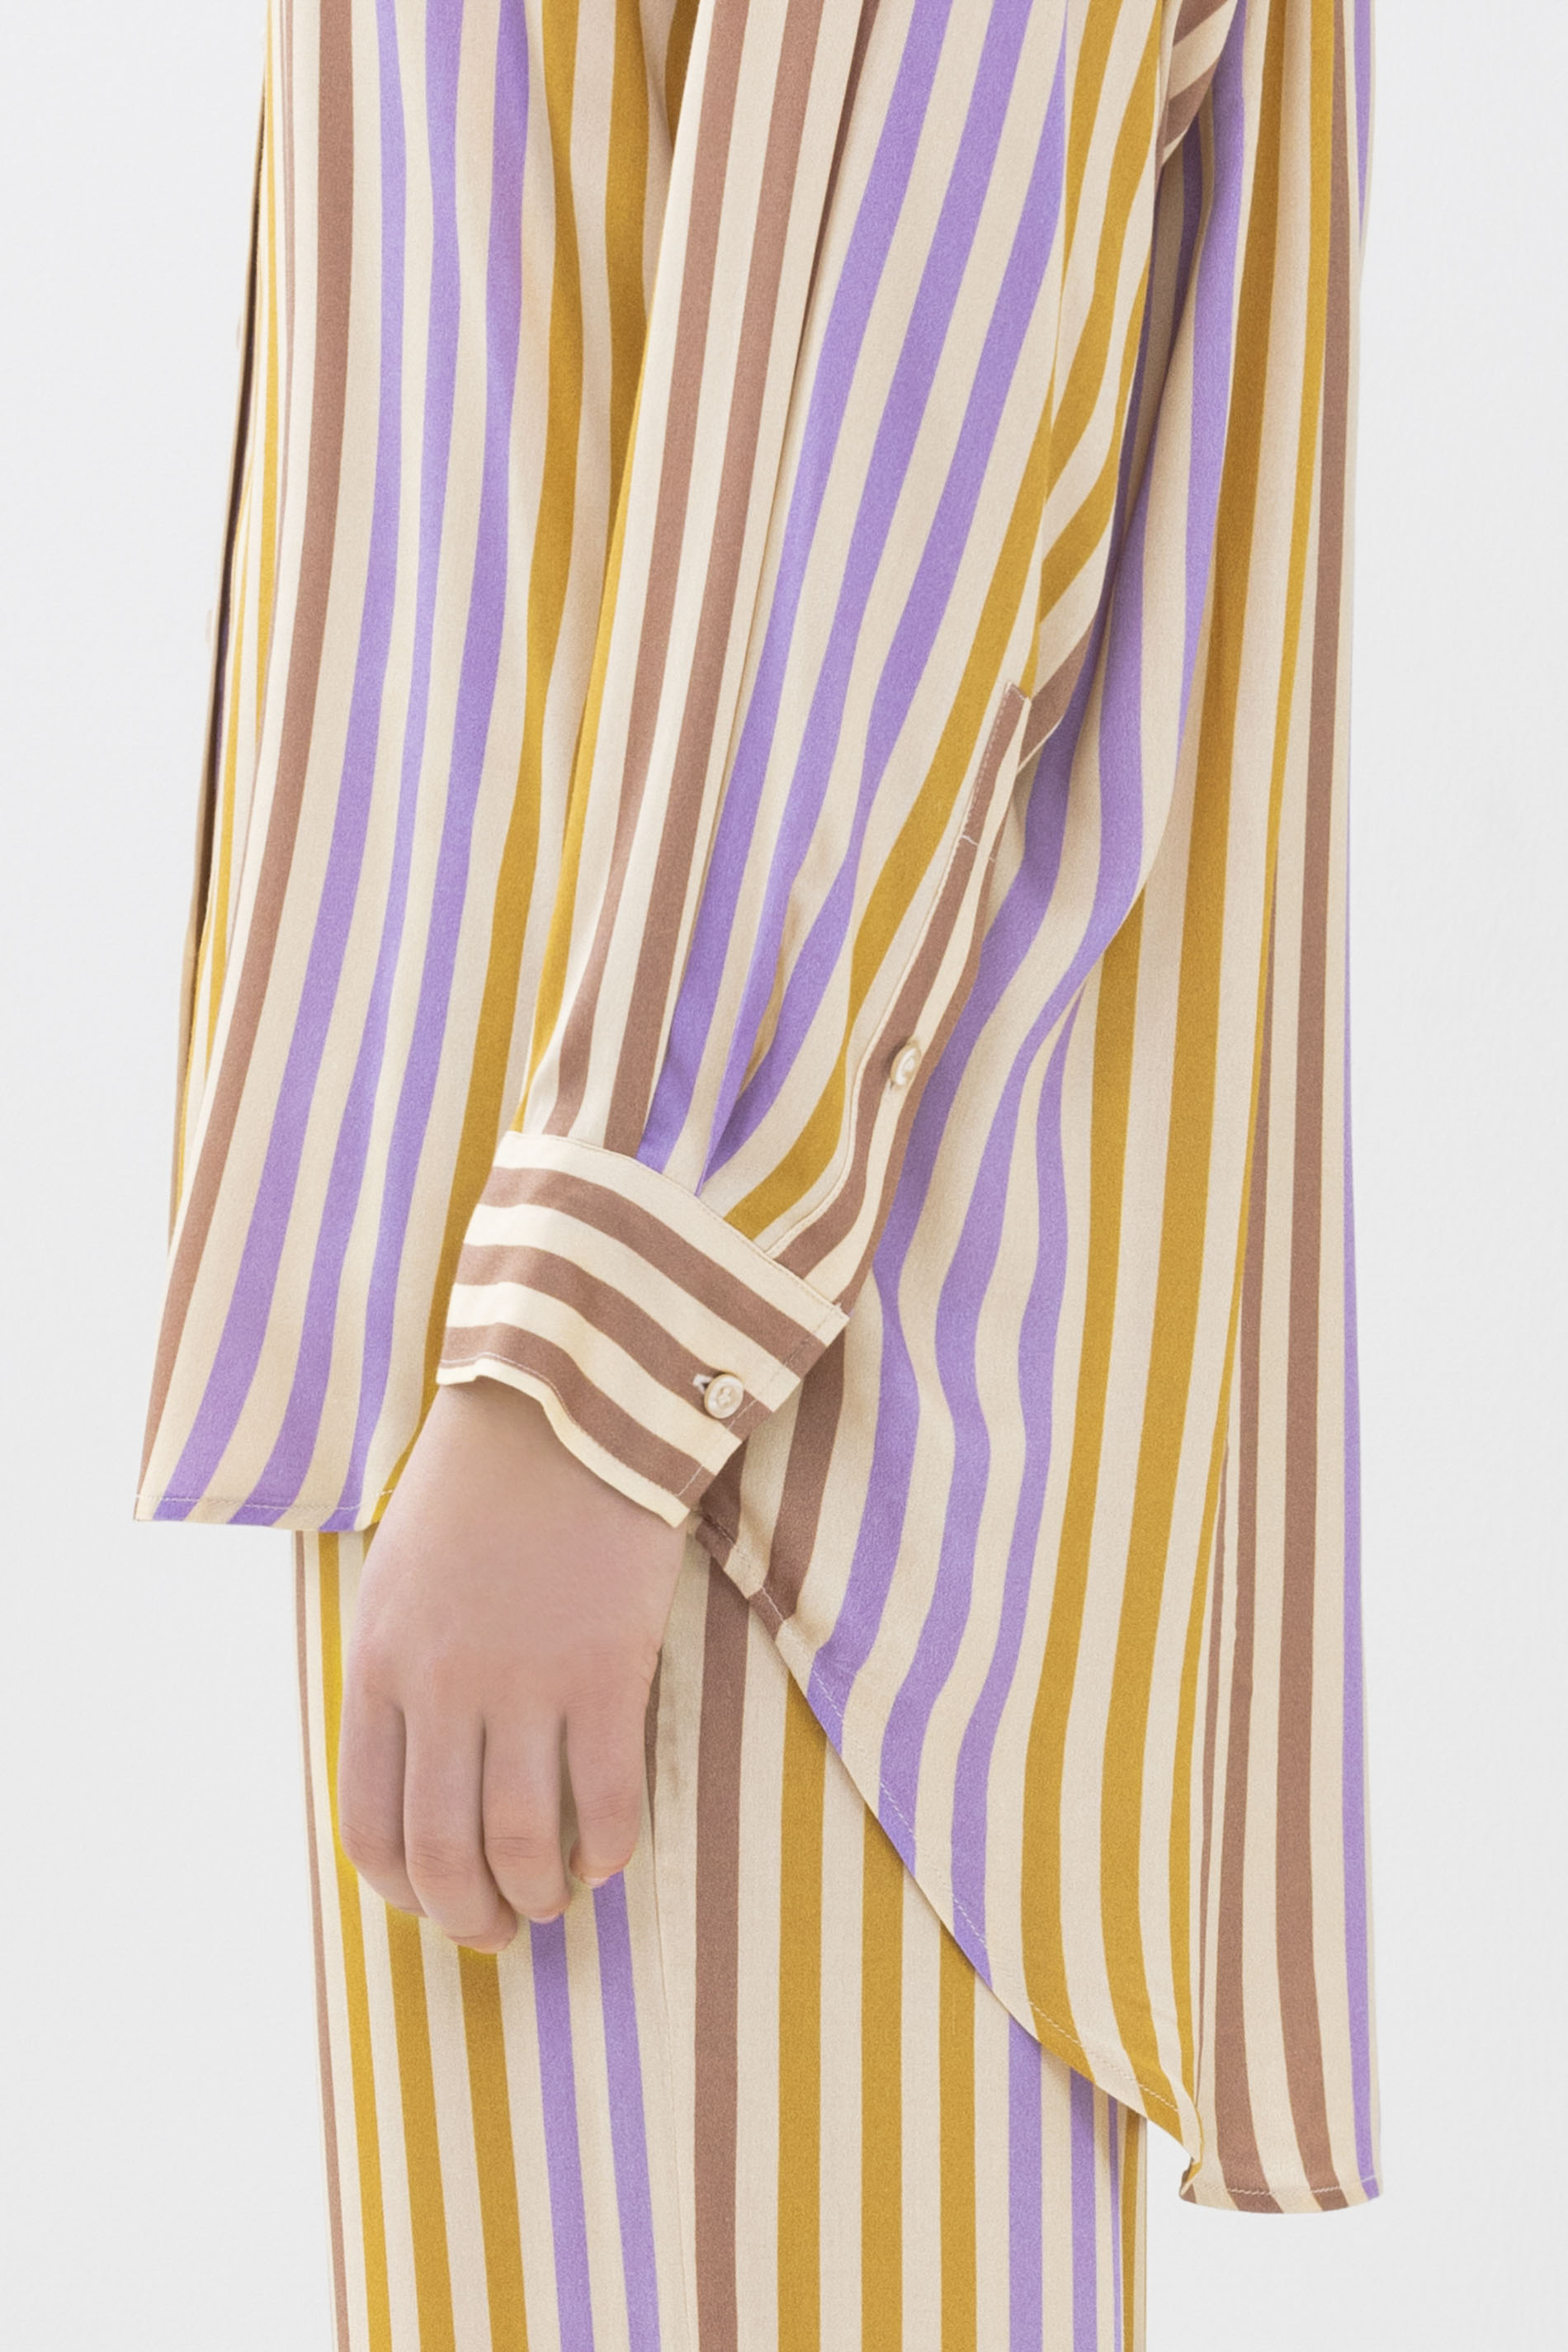 Long-sleeved shirt Wintergold Serie Alana Detail View 02 | mey®